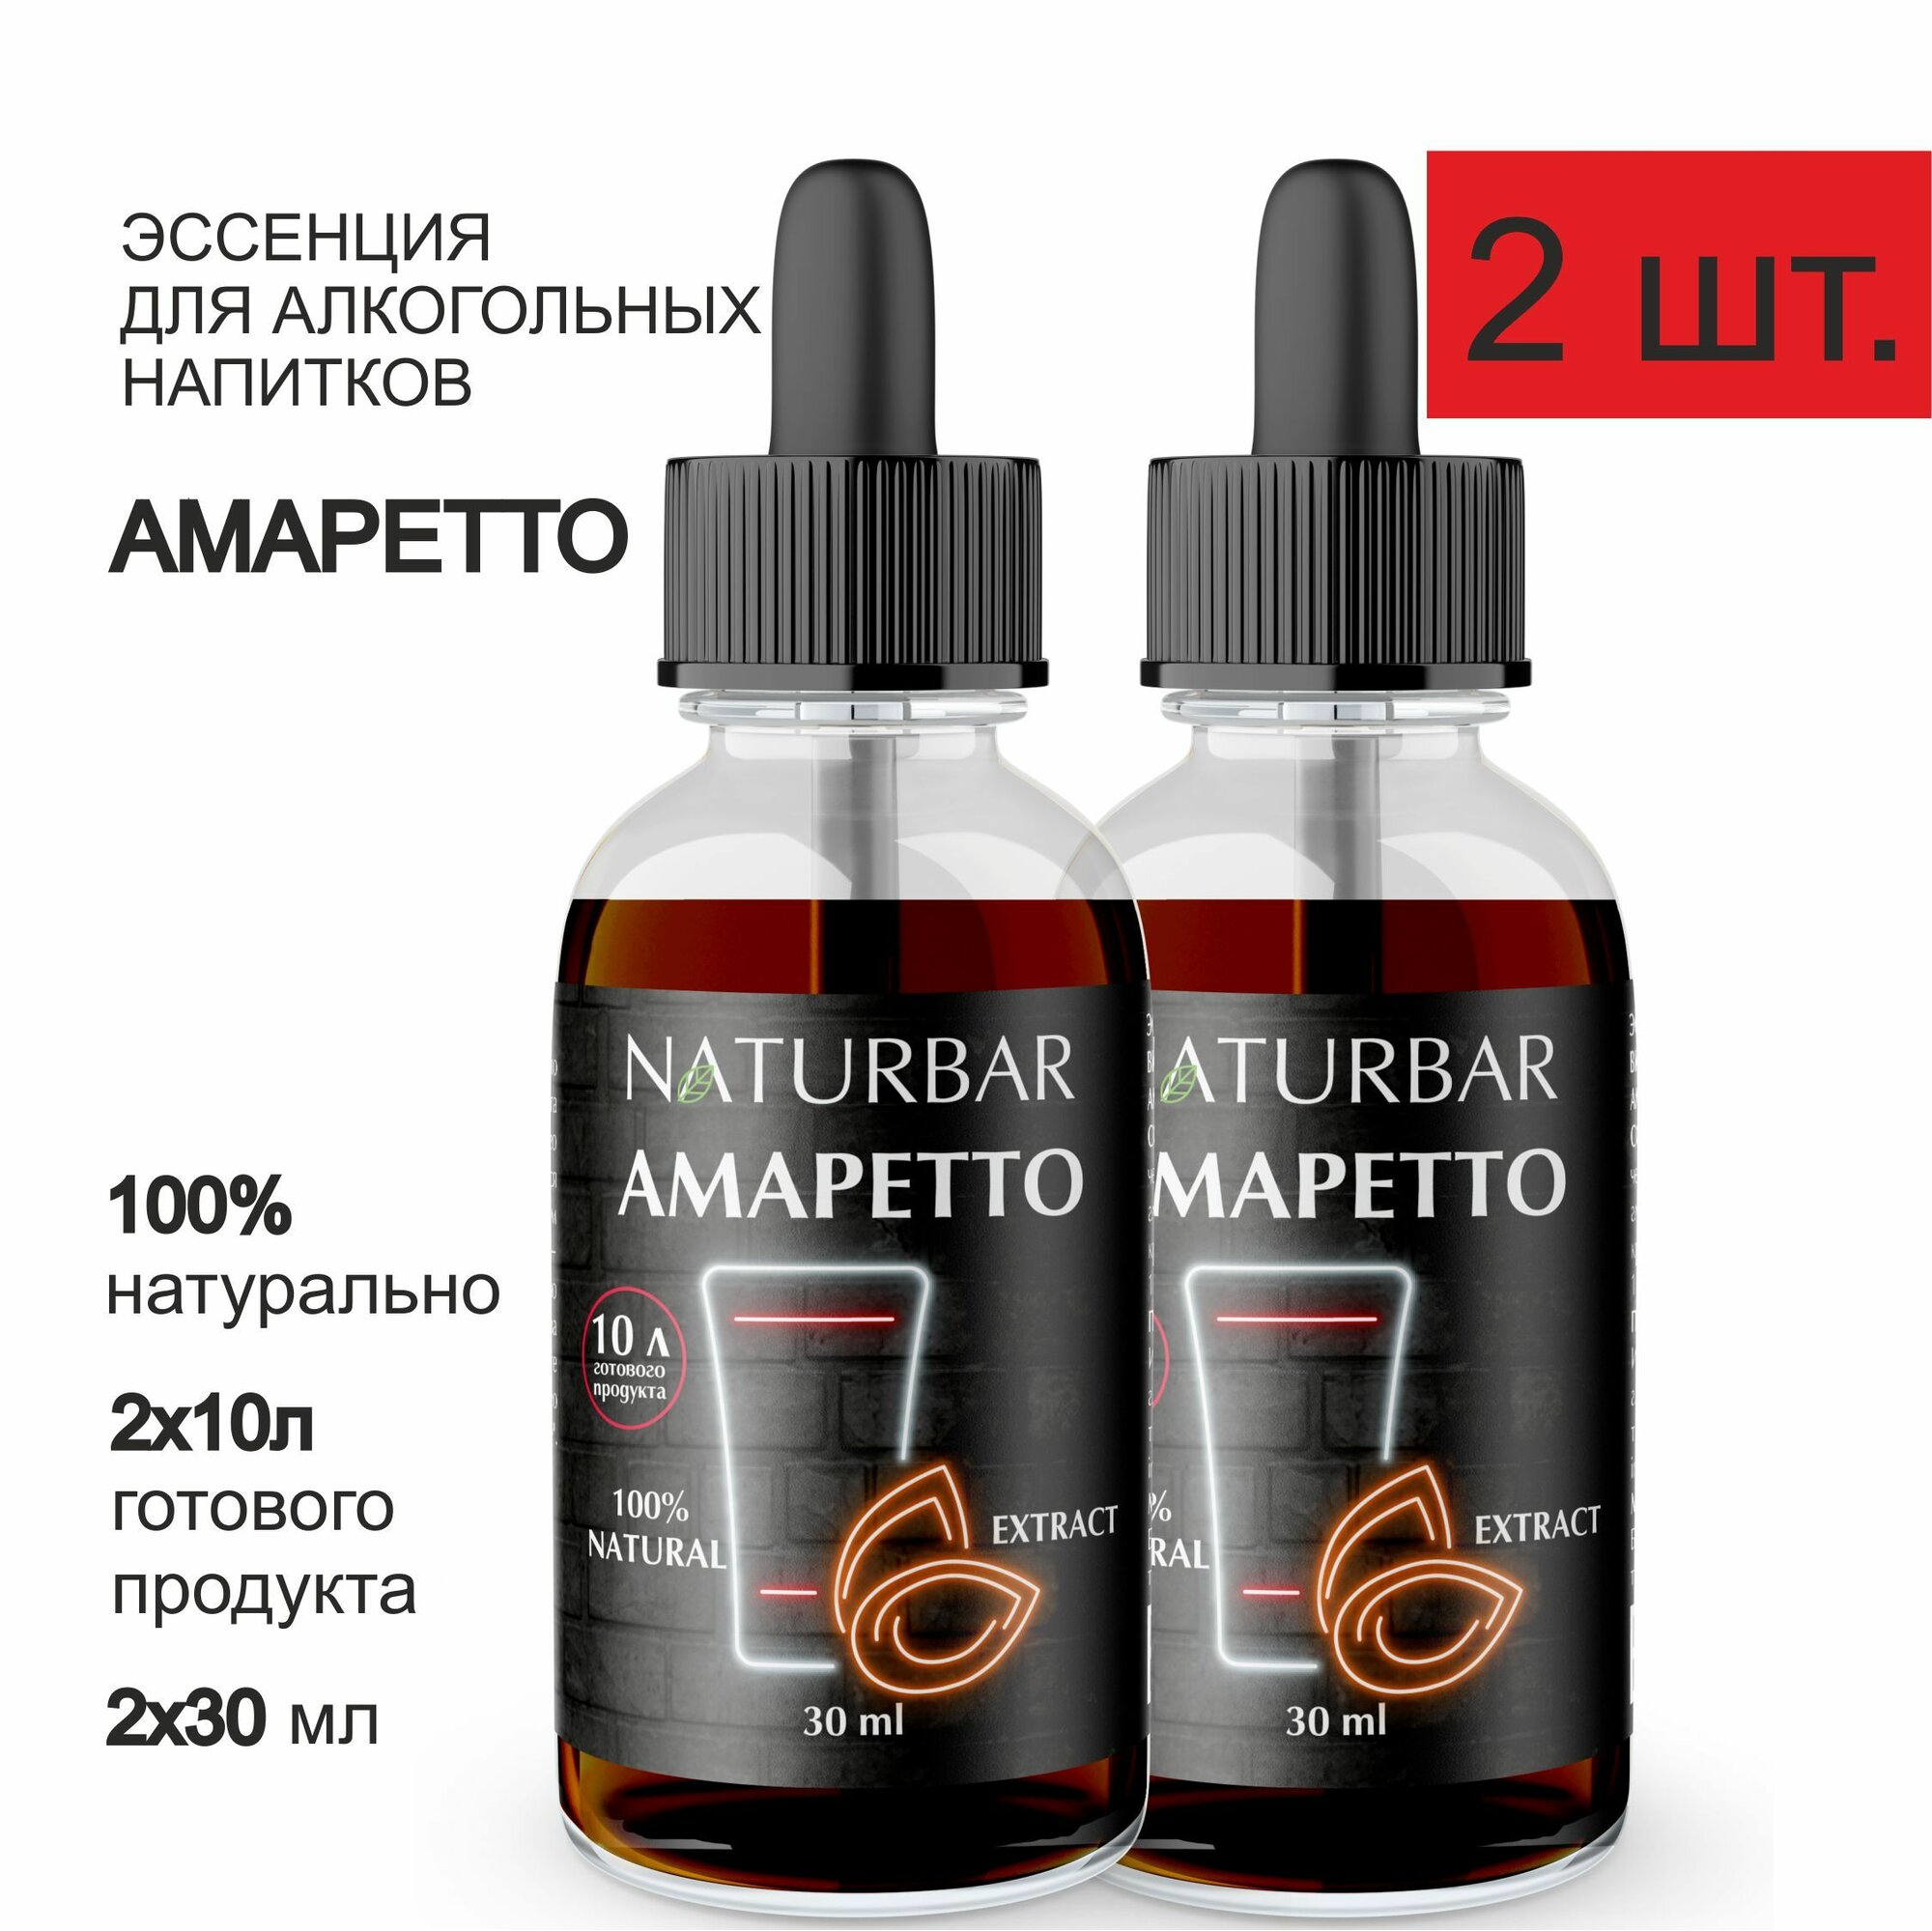 Эссенция амаретто Amaretto вкусовой концентрат (ароматизатор пищевой), для самогона, 30 мл - 2 шт.